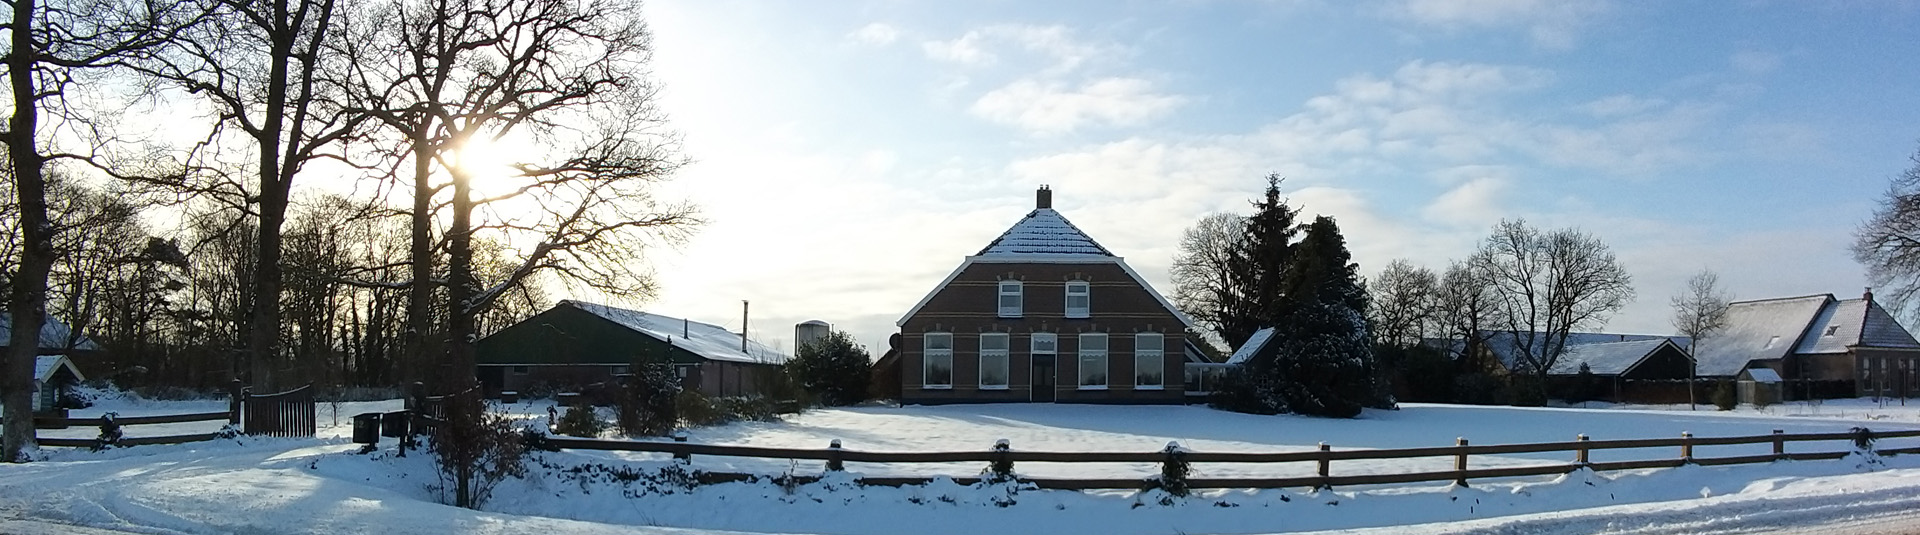 Elsenhoeve Wapserveen Winter 2021